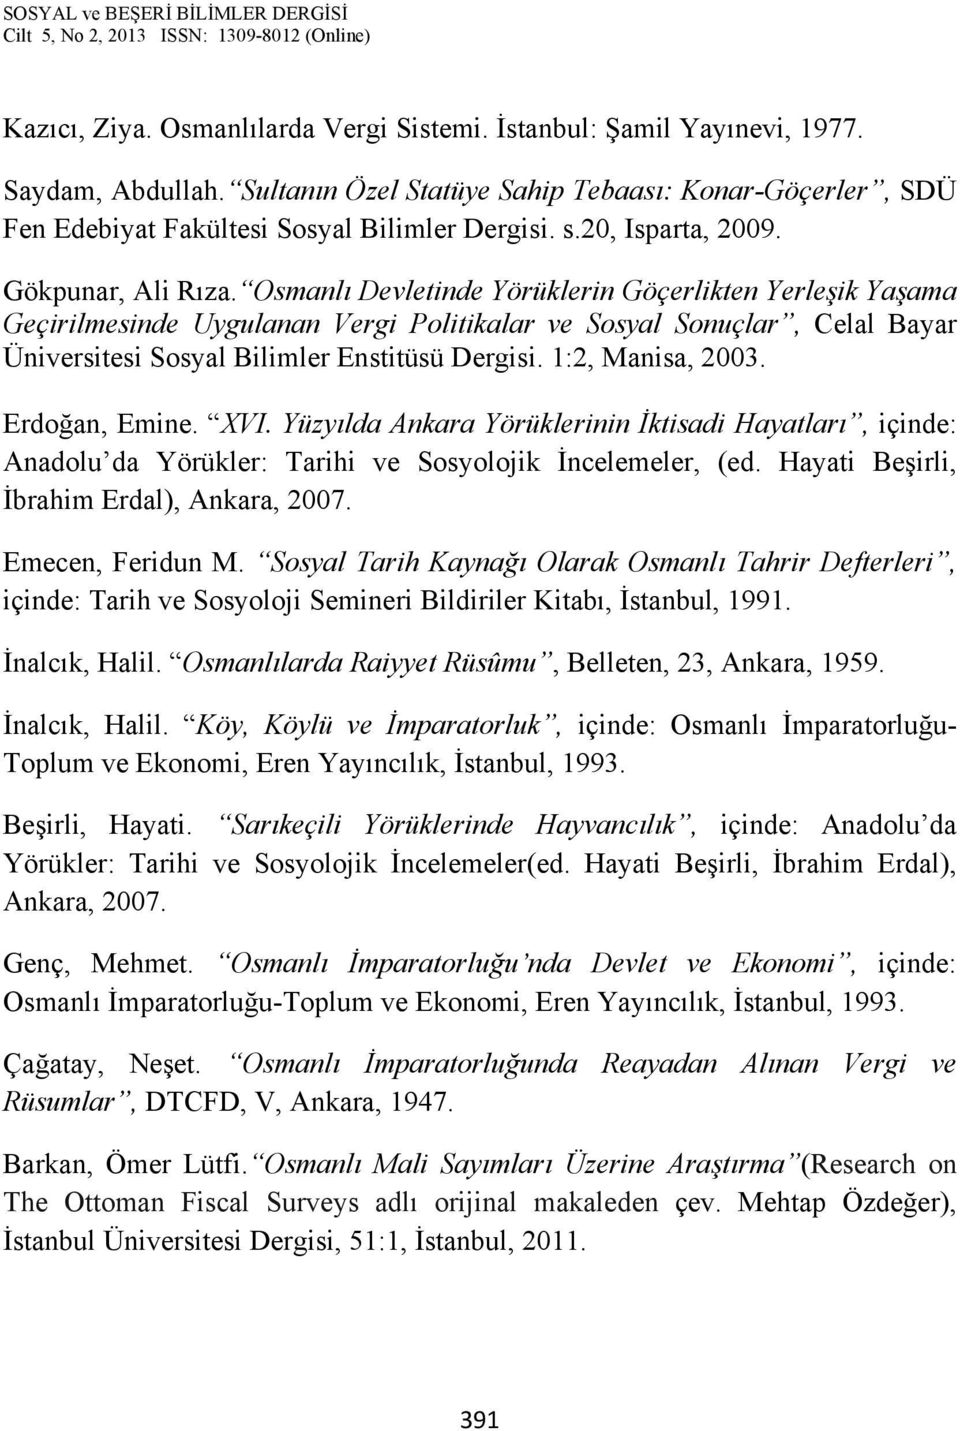 Osmanlı Devletinde Yörüklerin Göçerlikten Yerleşik Yaşama Geçirilmesinde Uygulanan Vergi Politikalar ve Sosyal Sonuçlar, Celal Bayar Üniversitesi Sosyal Bilimler Enstitüsü Dergisi. 1:2, Manisa, 2003.